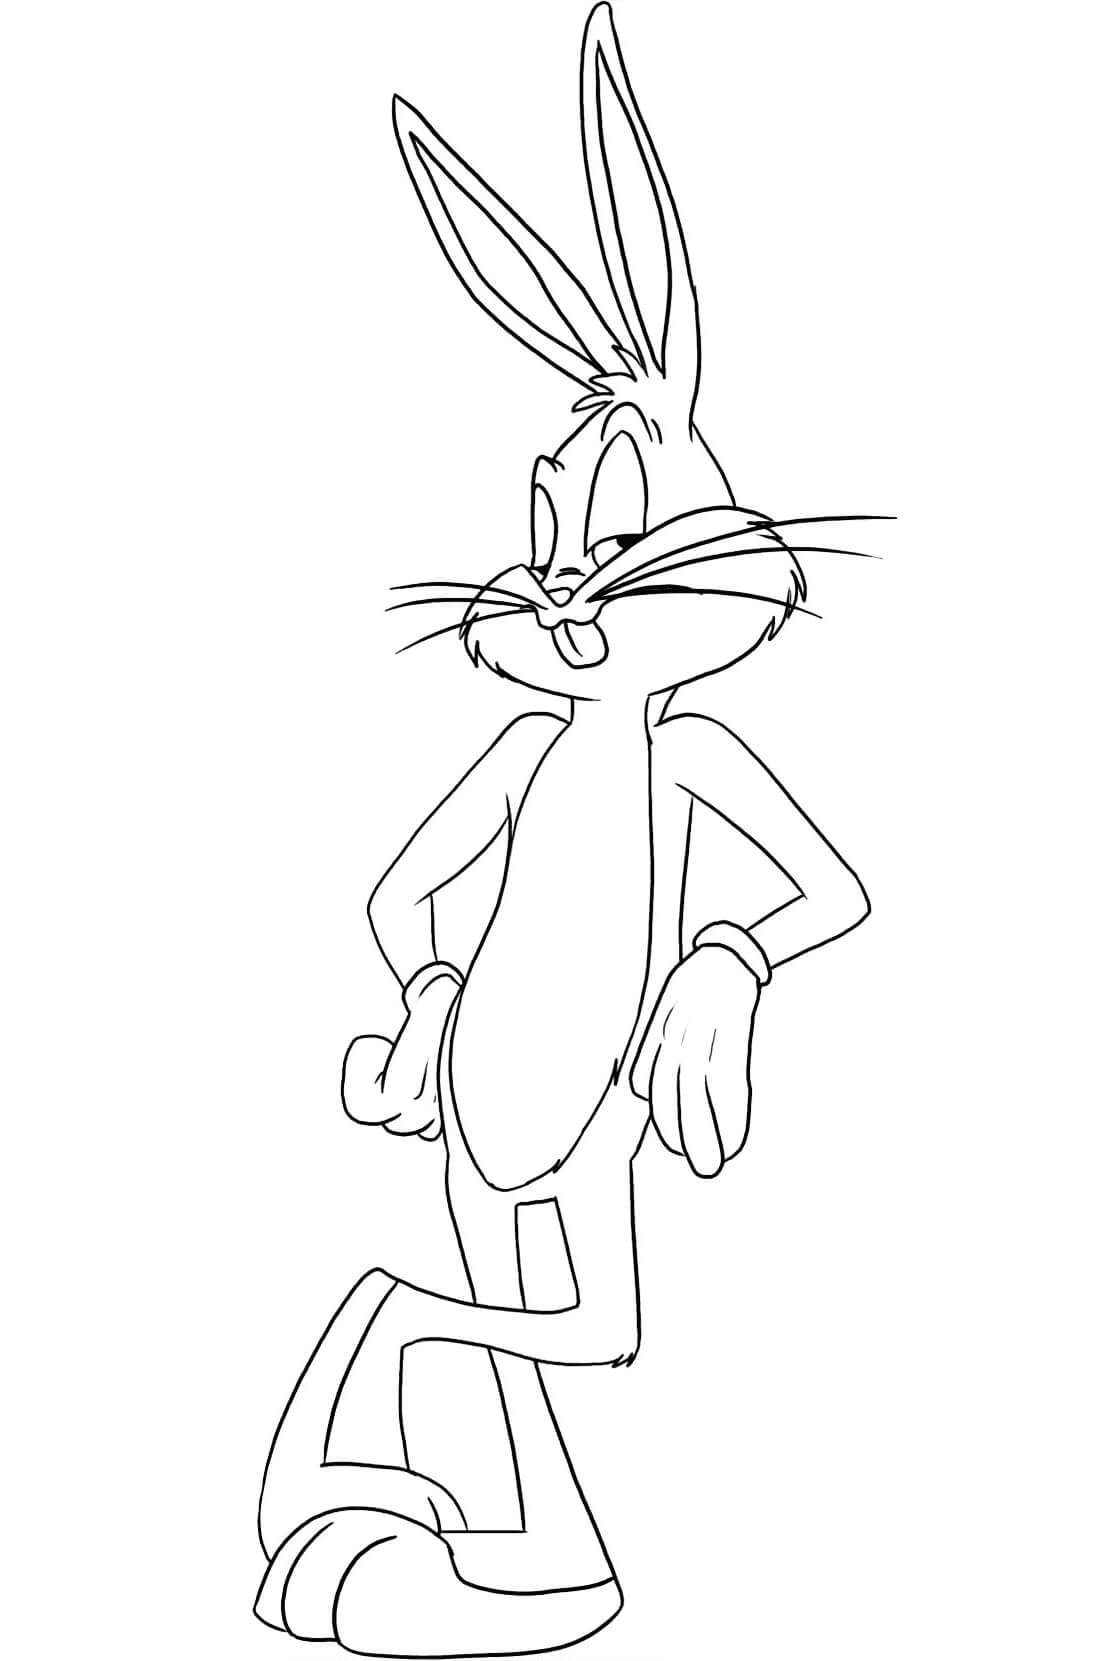 Bugs Bunny de Looney Tunes para colorir